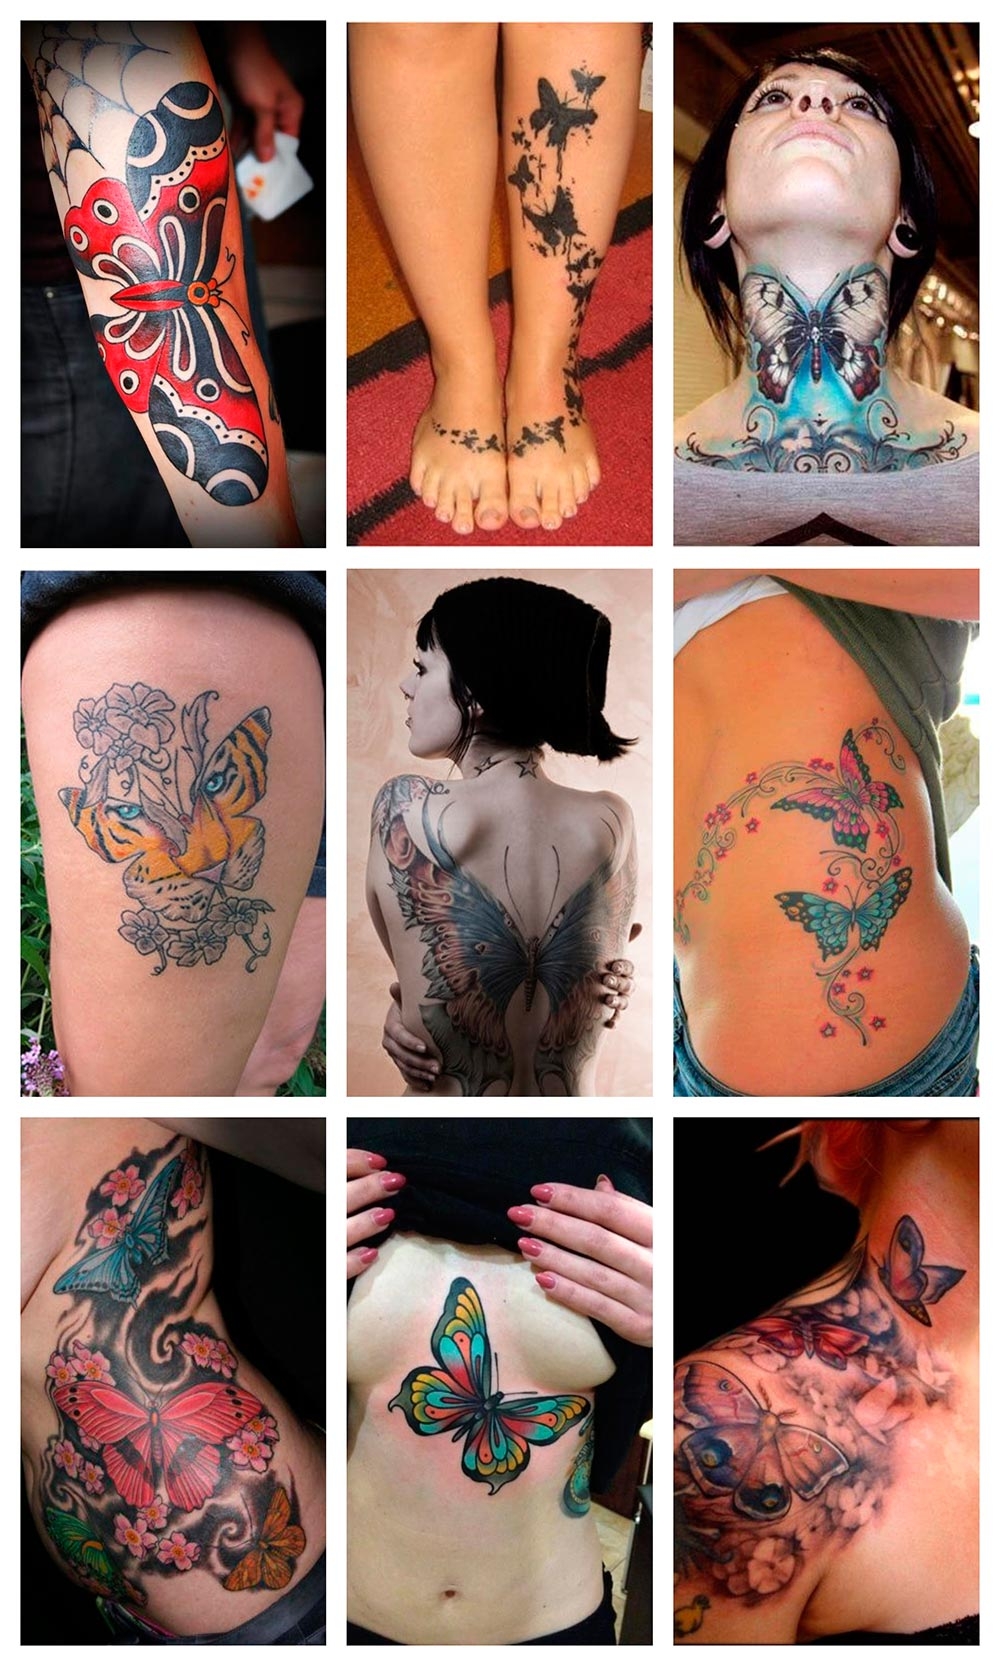 Tatuajes de mariposas: ¿qué significado tienen para los que deciden  realizárselos? - Gente - Cultura 